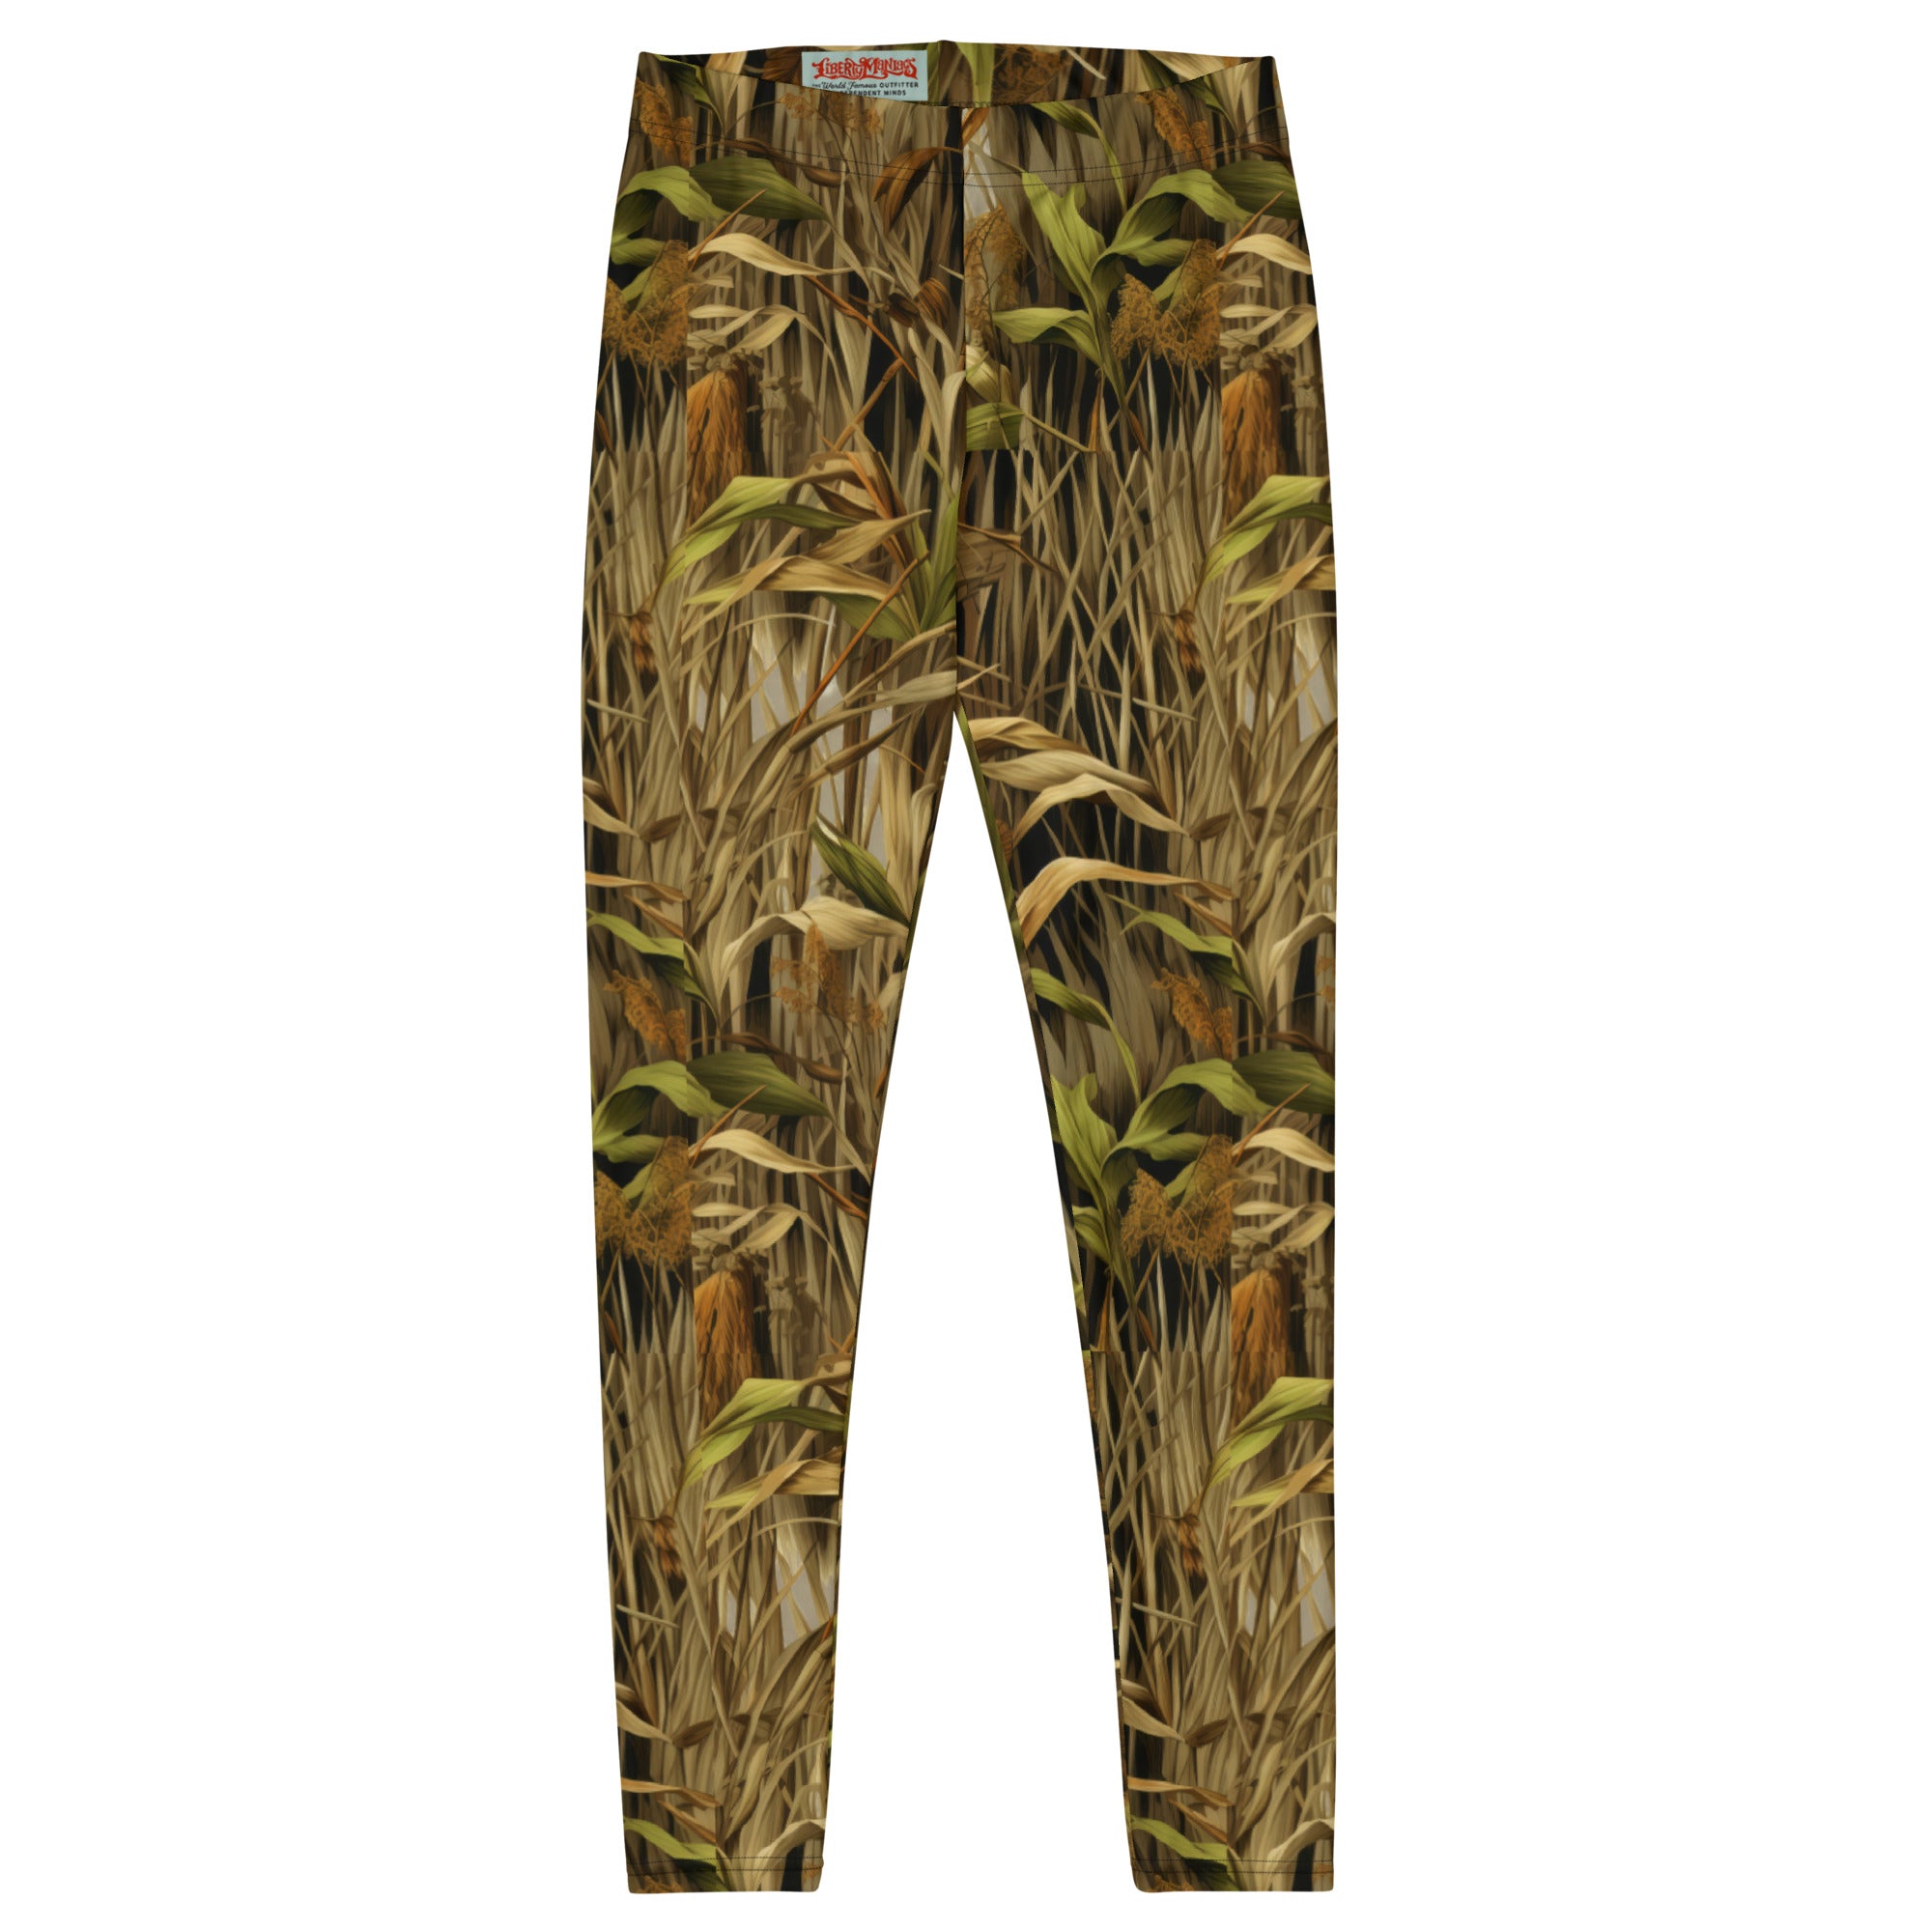 StealthBlend Marsh Camouflage Leggings